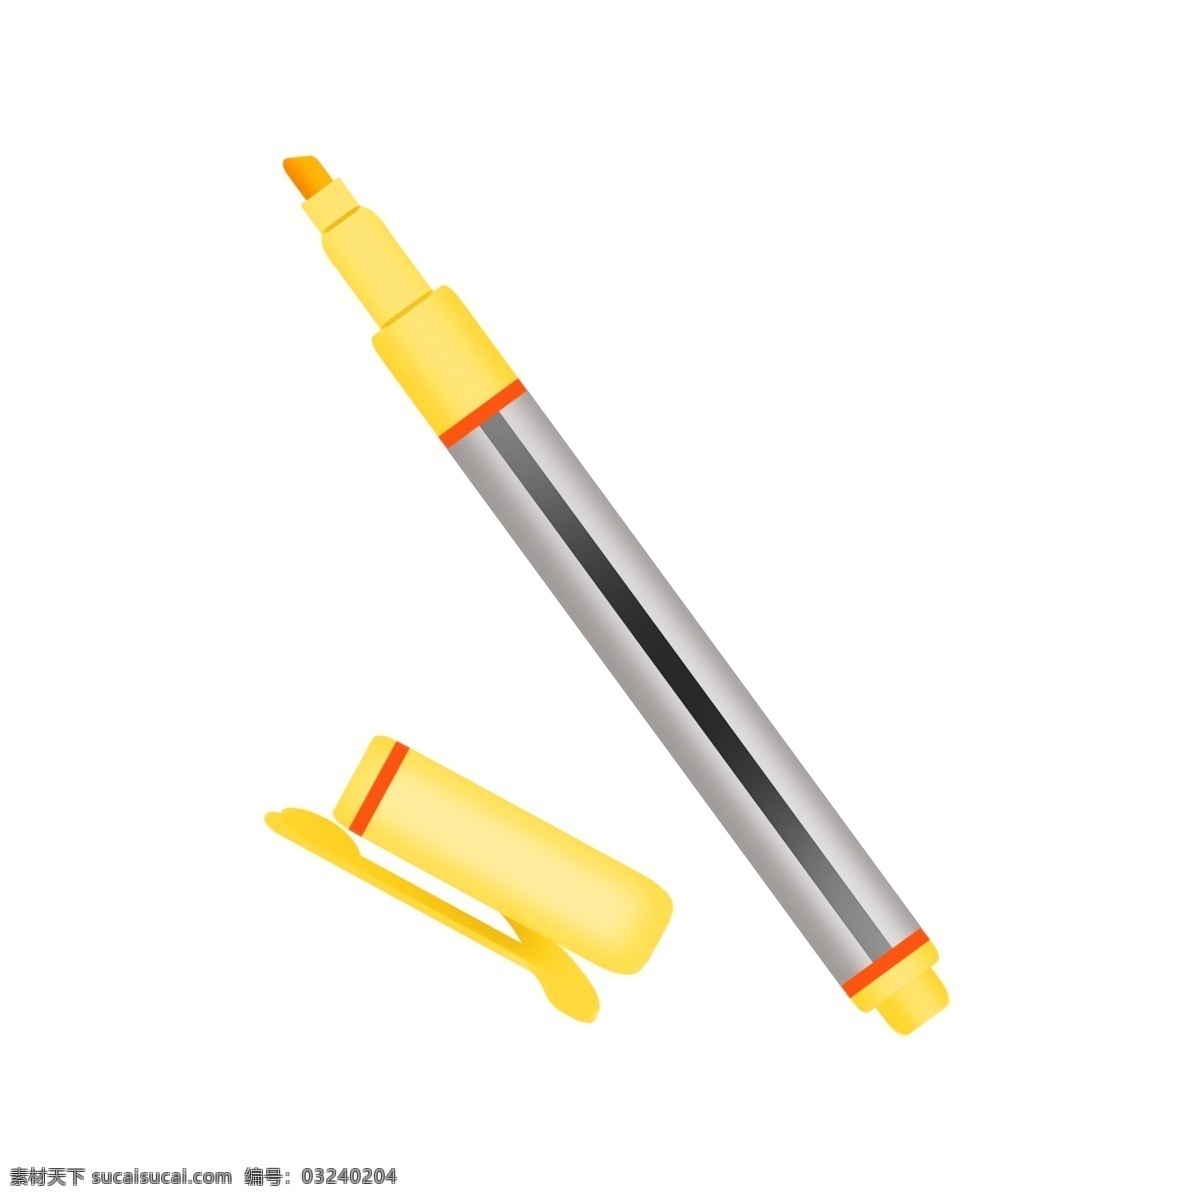 银色 记号笔 插图 银色的记号笔 黄色的记号笔 生活用品 标记 办公用品 橙色的笔芯 绘画工具